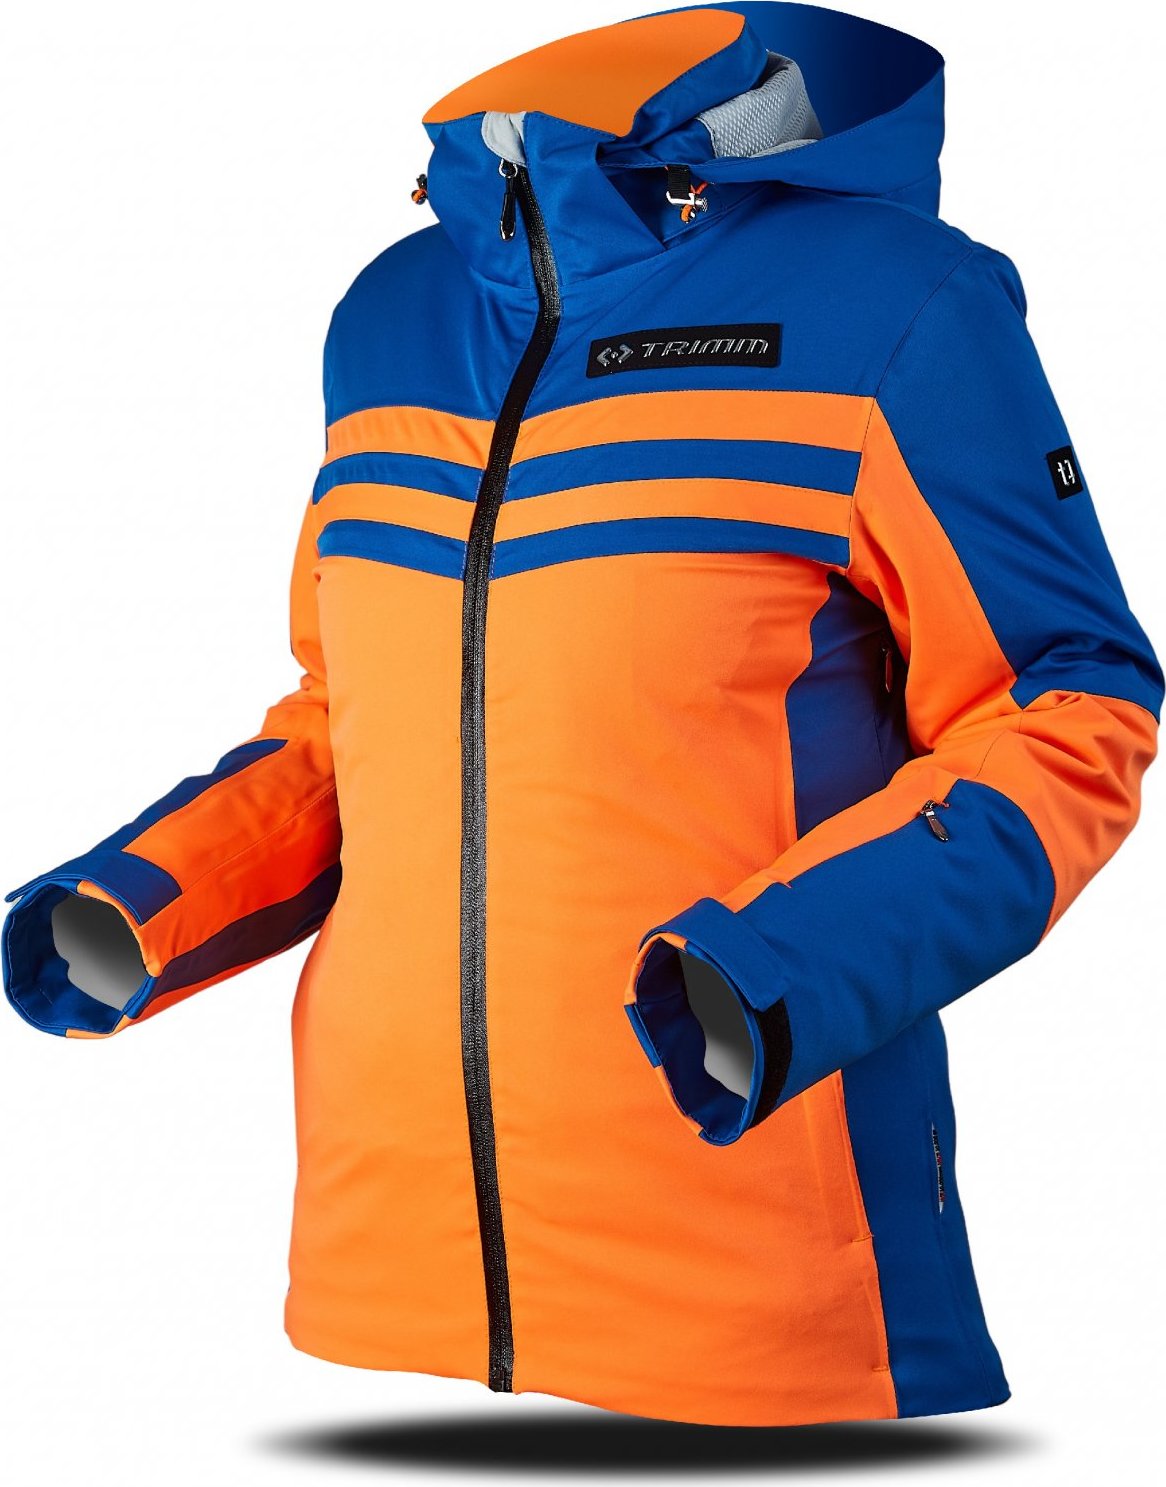 Dámská lyžařská bunda TRIMM Ilusion oranžová/modrá Velikost: S, Barva: signal orange/jeans blue